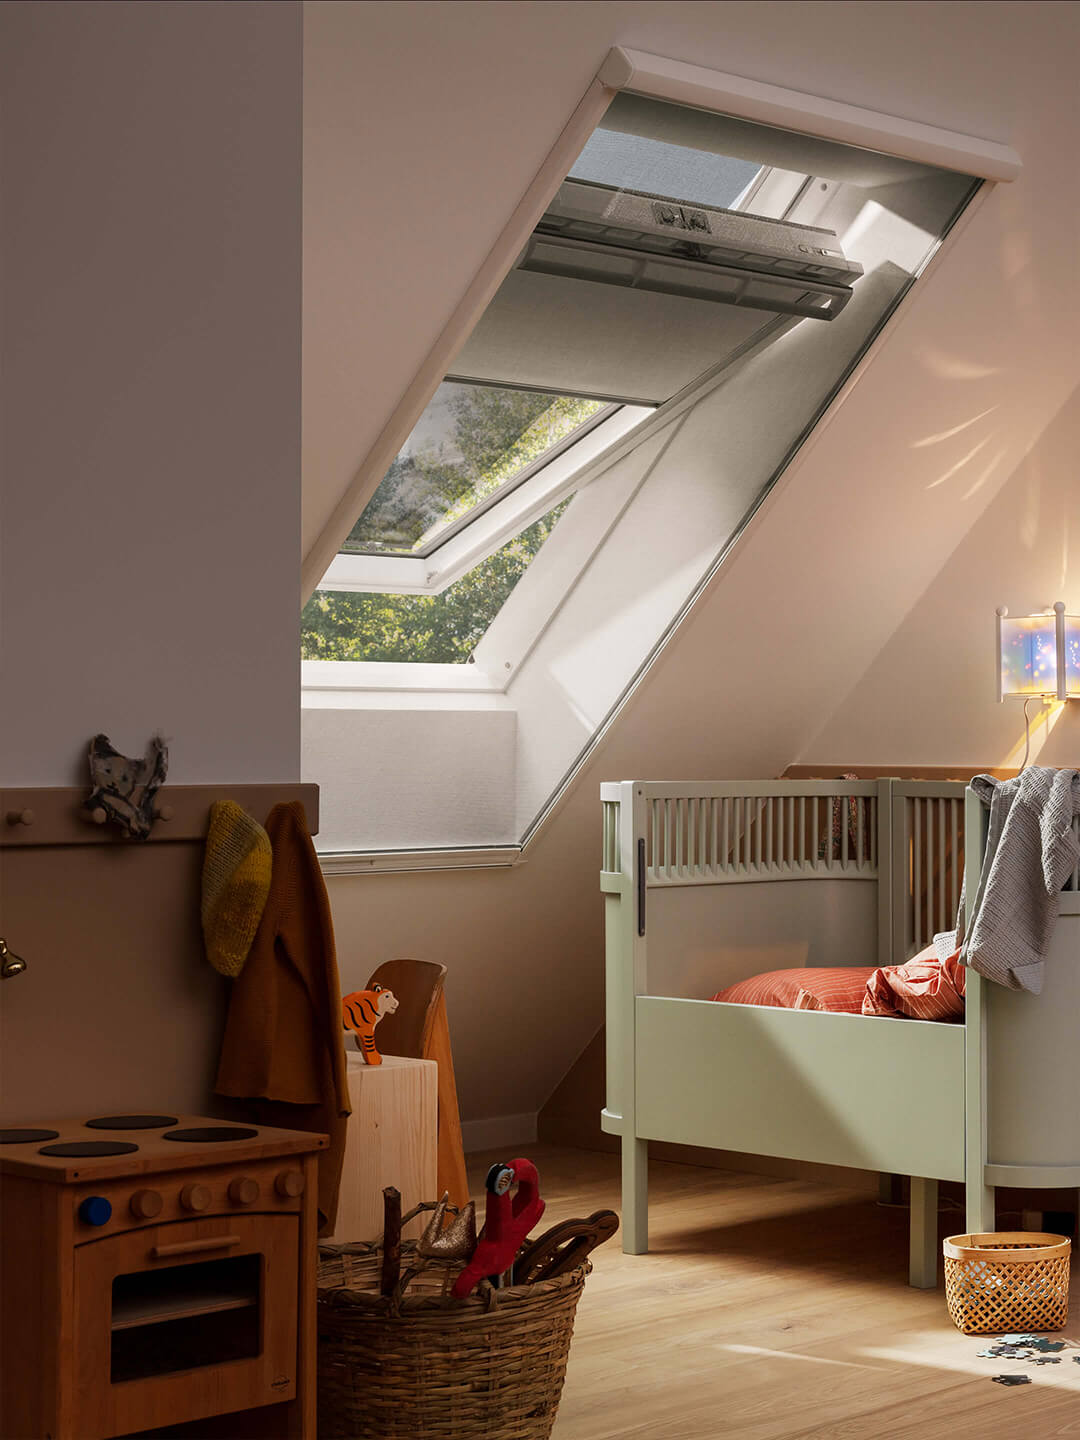 Kinderzimmer mit Bett, Spielzeug und einem VELUX Dachflächenfenster, durch das Sonnenlicht einfällt.